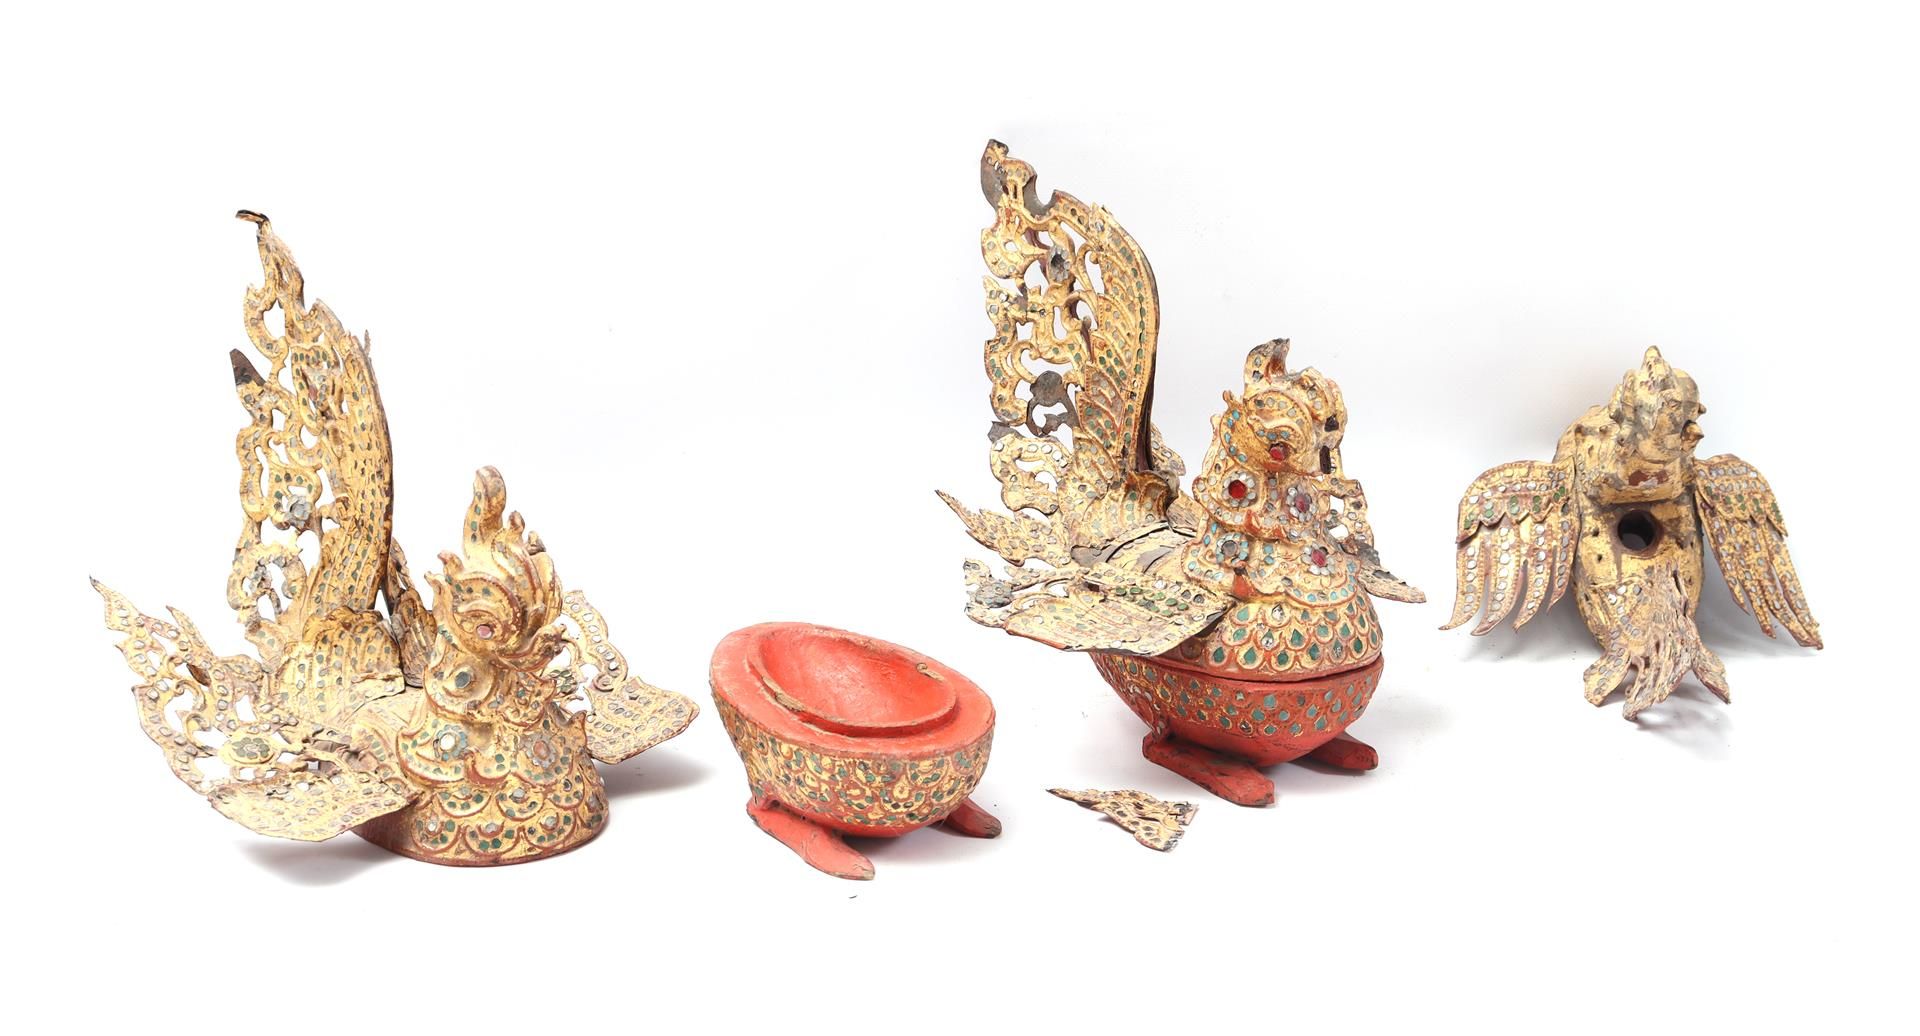 Burmese gold-coloured offering bowl set - Image 2 of 2